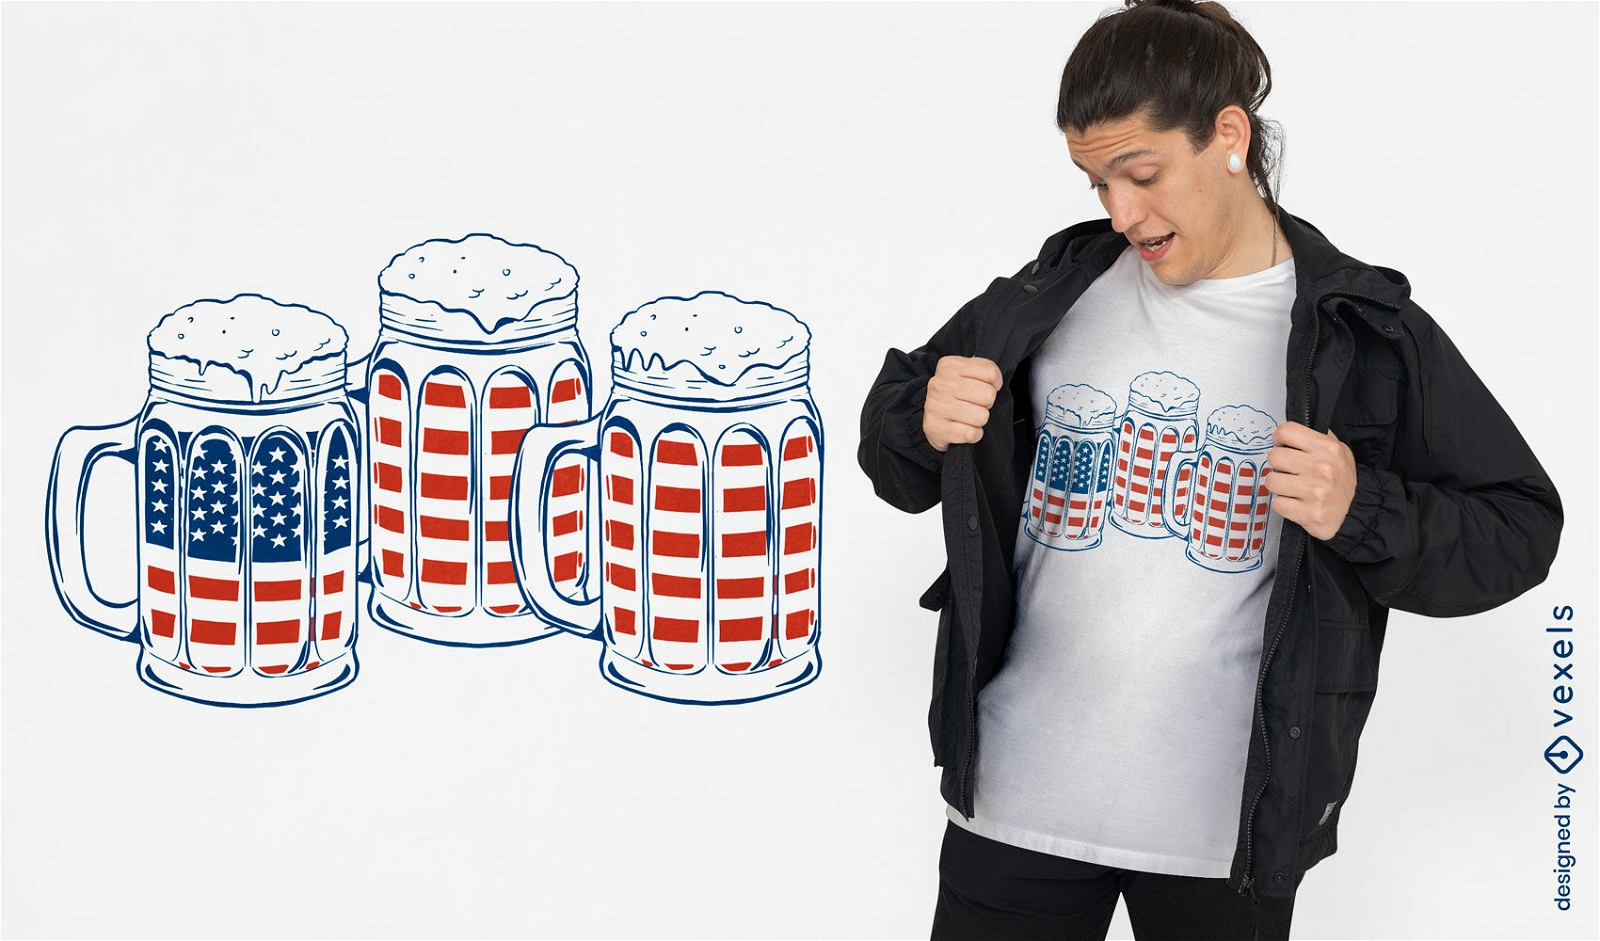 Canecas com design de camiseta de cerveja e bandeiras americanas